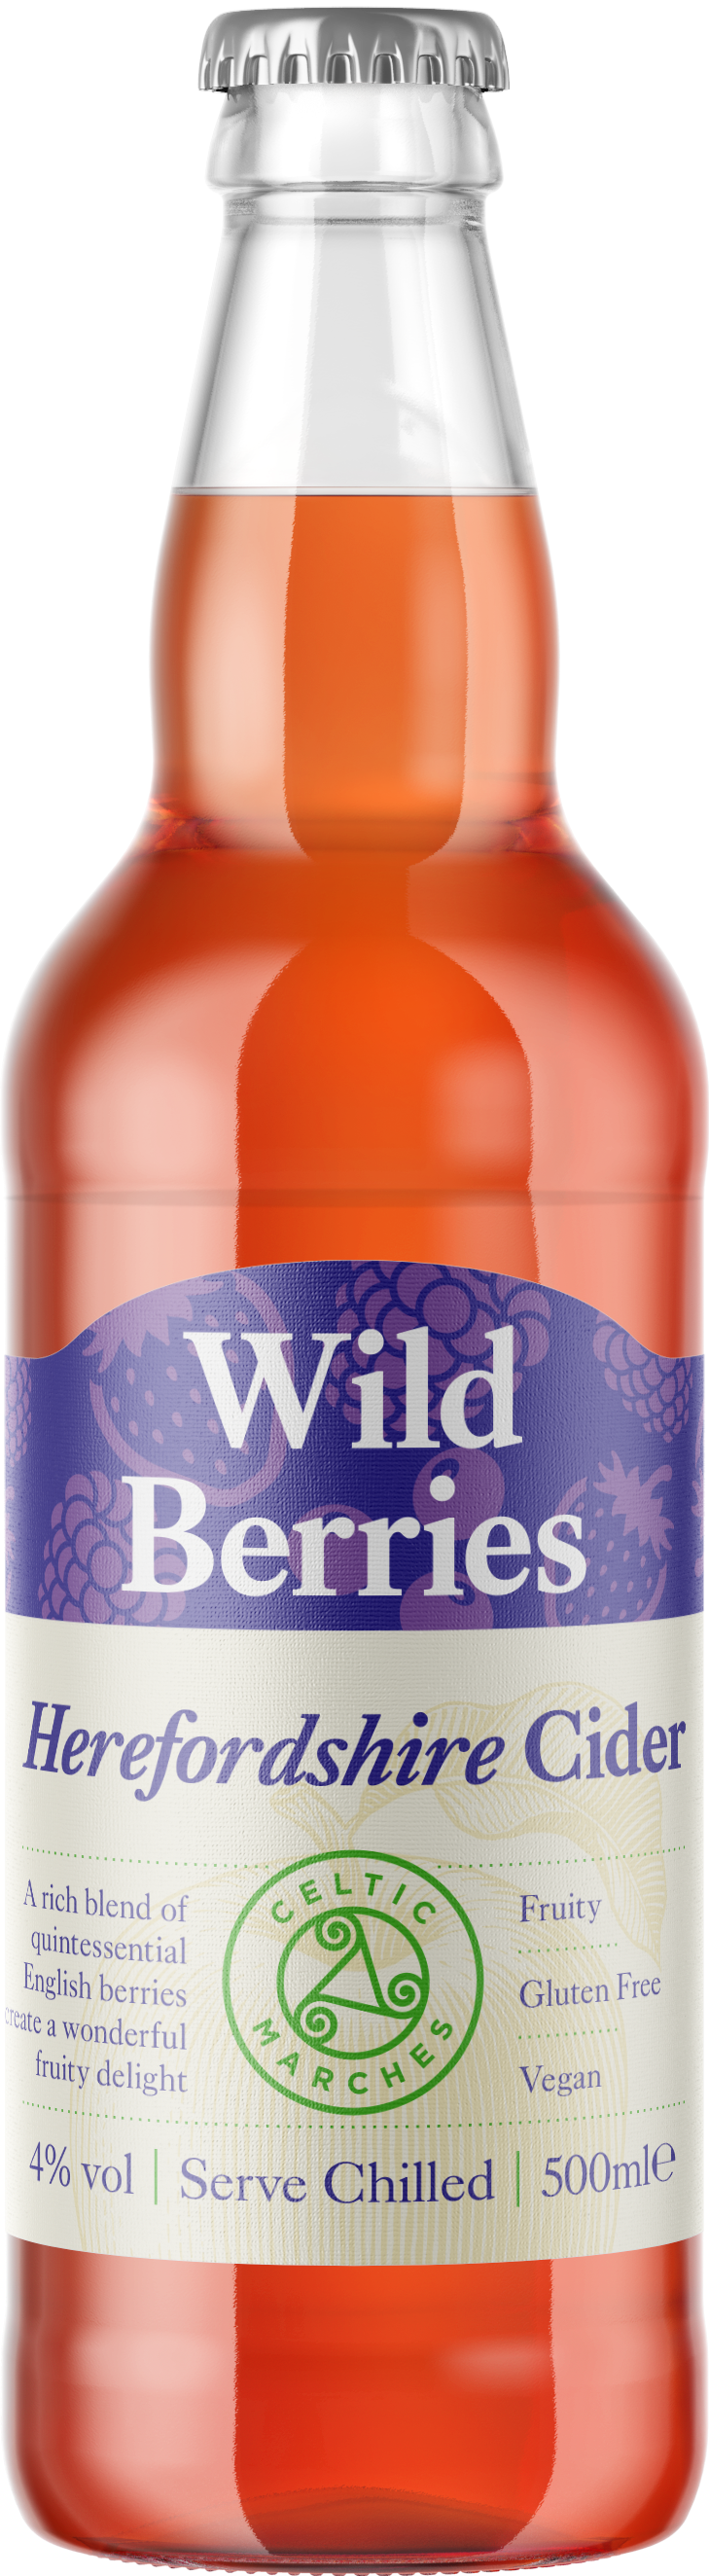 Wild Berries 4% 12 x 500ml Bottles